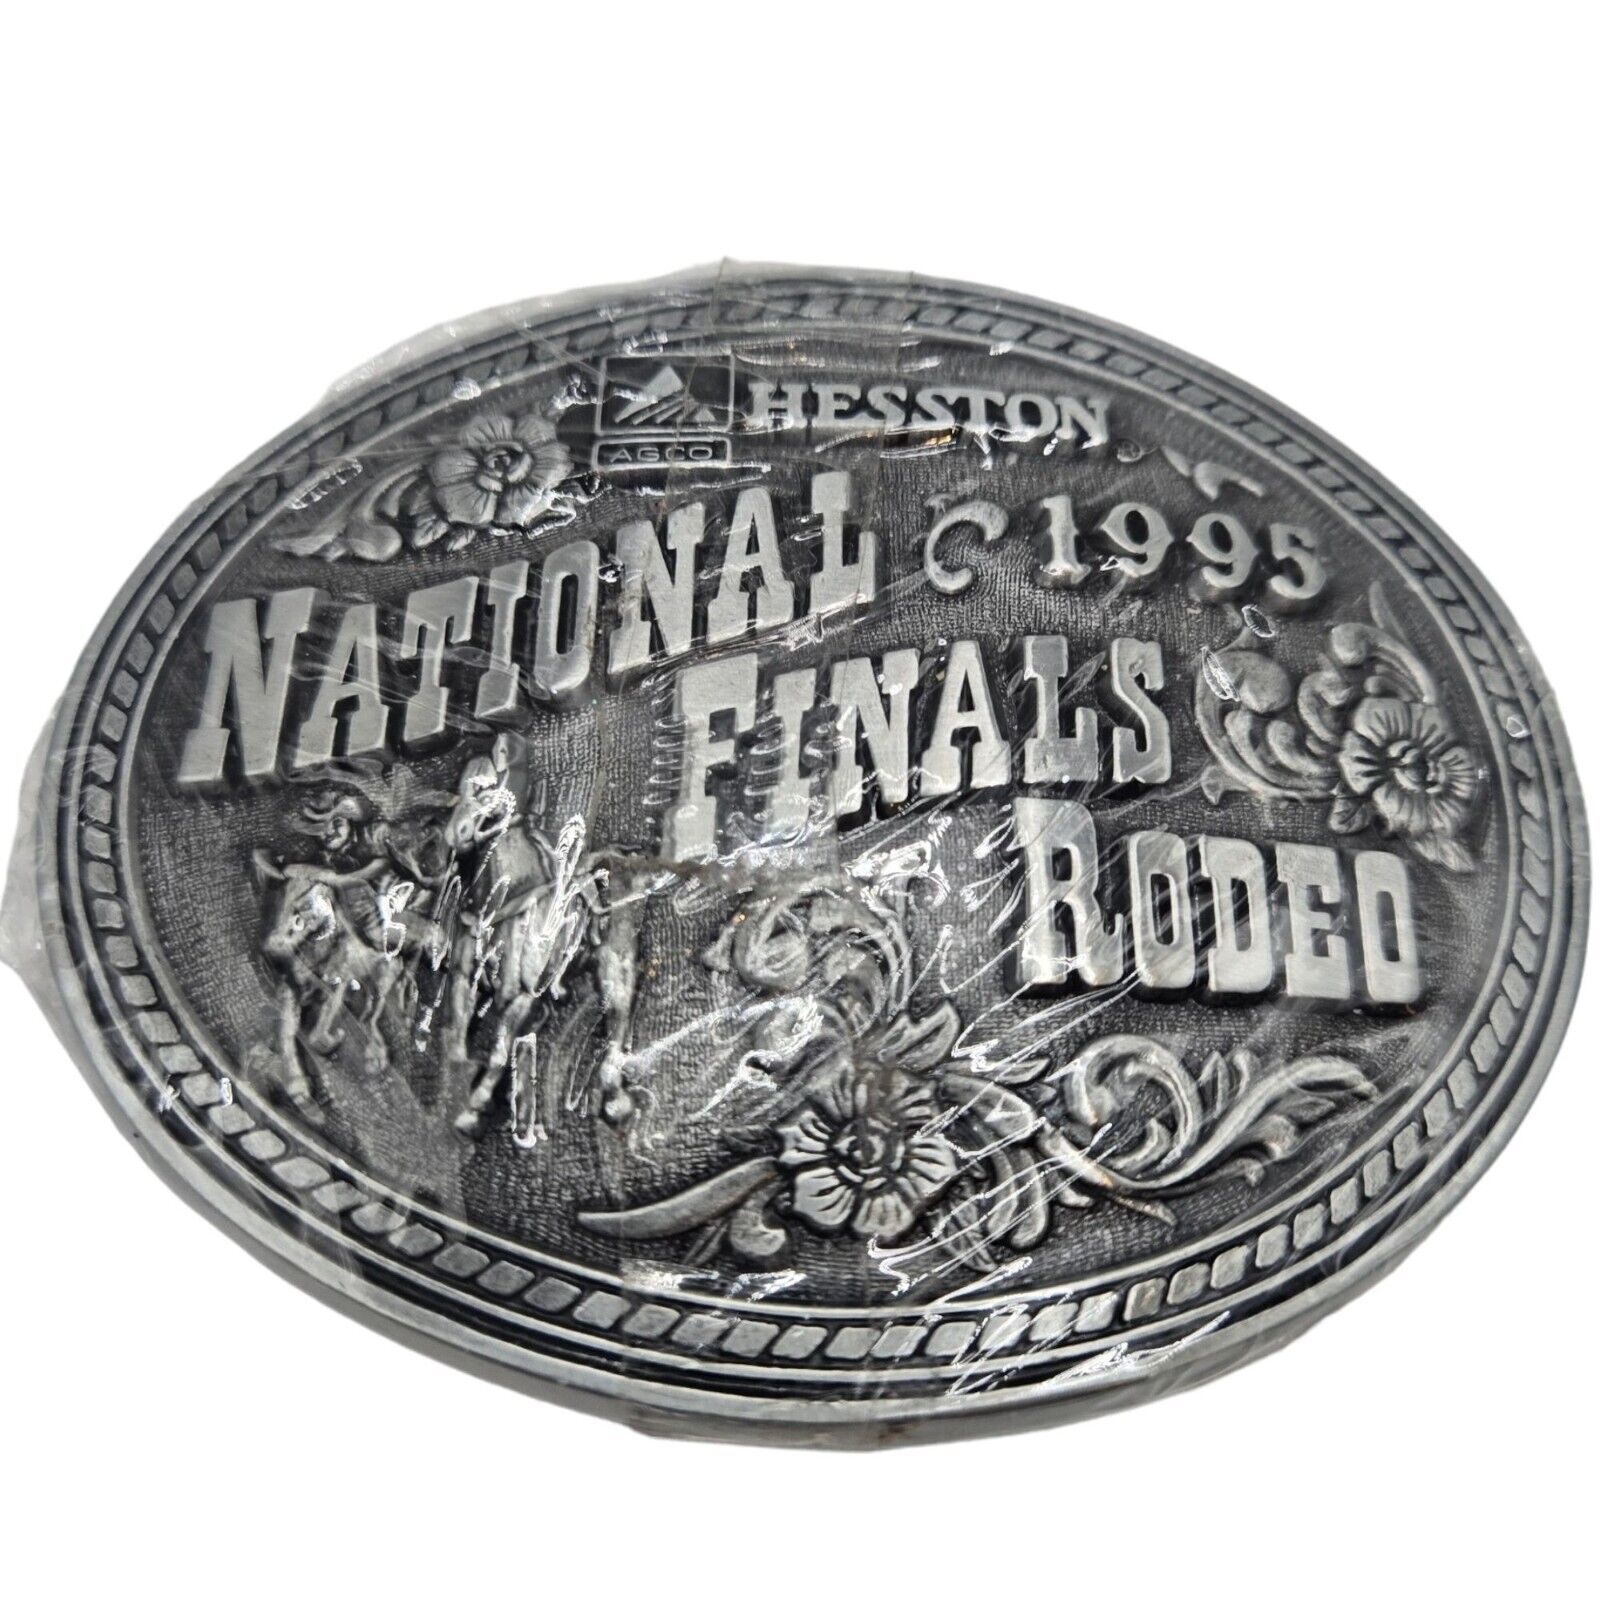 1995 NFR Rodeo Belt Buckle Steer Wrestling National Finals NOS Cowboy Vintage